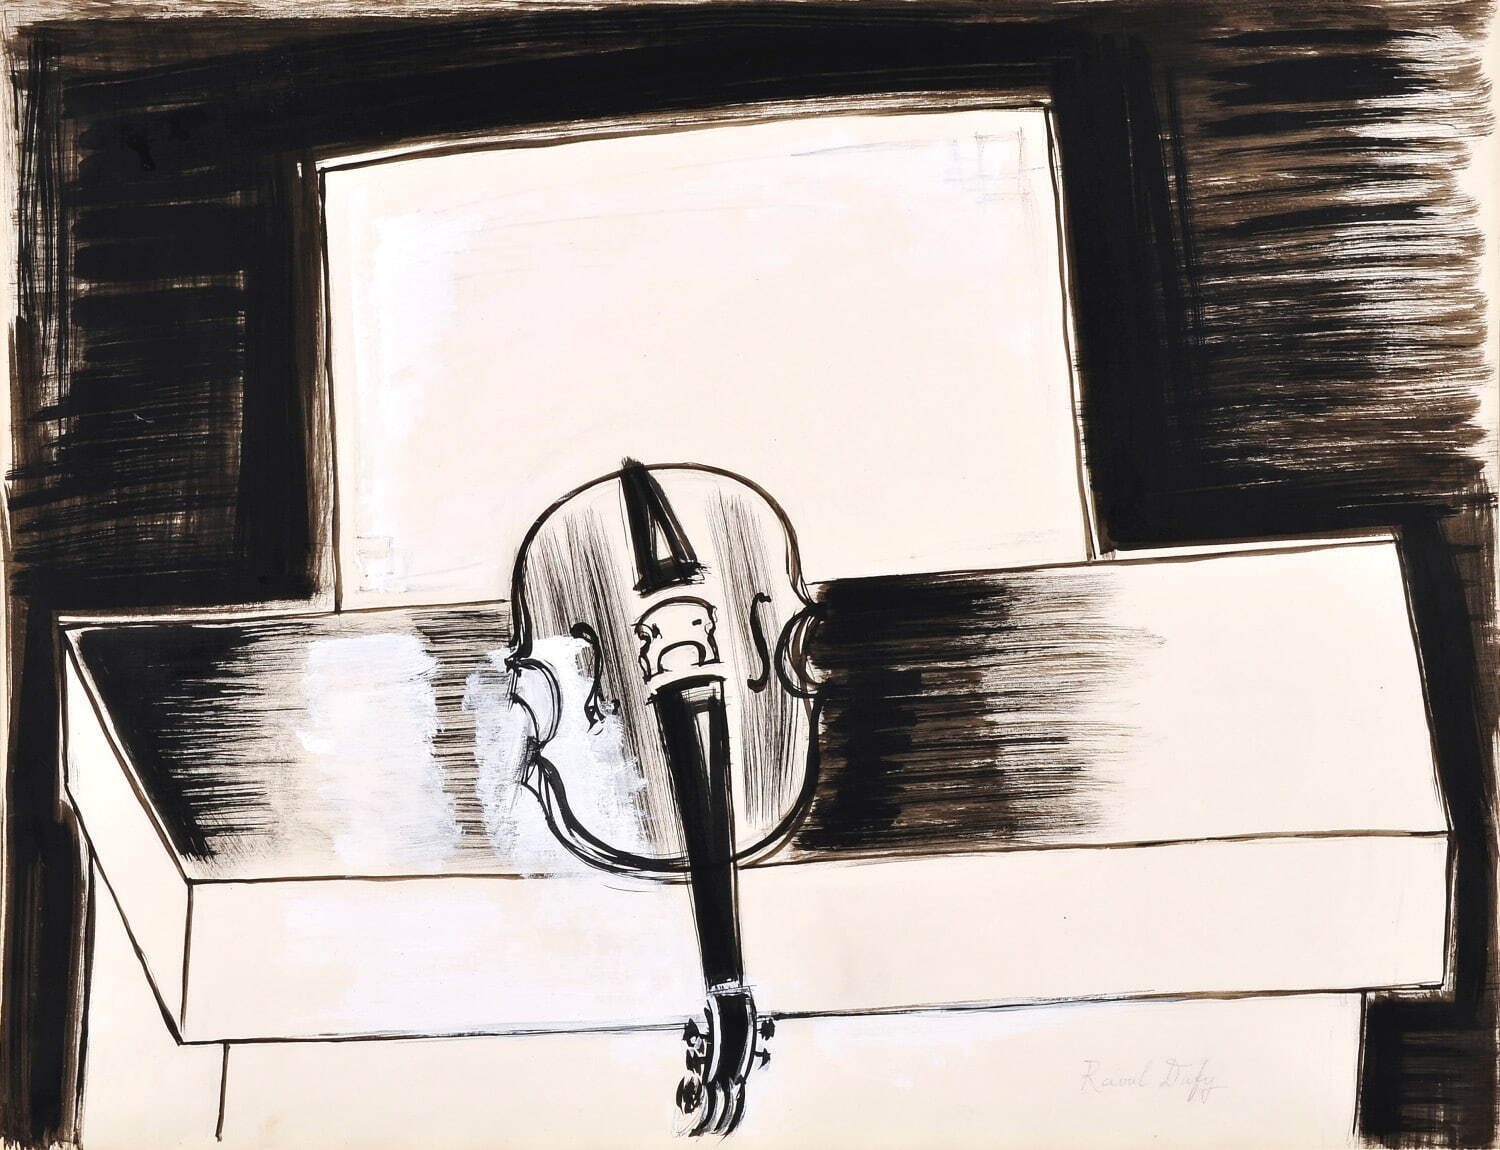 ラウル・デュフィ 《バイオリン》
50×65cm 紙・インク・グワッシュ